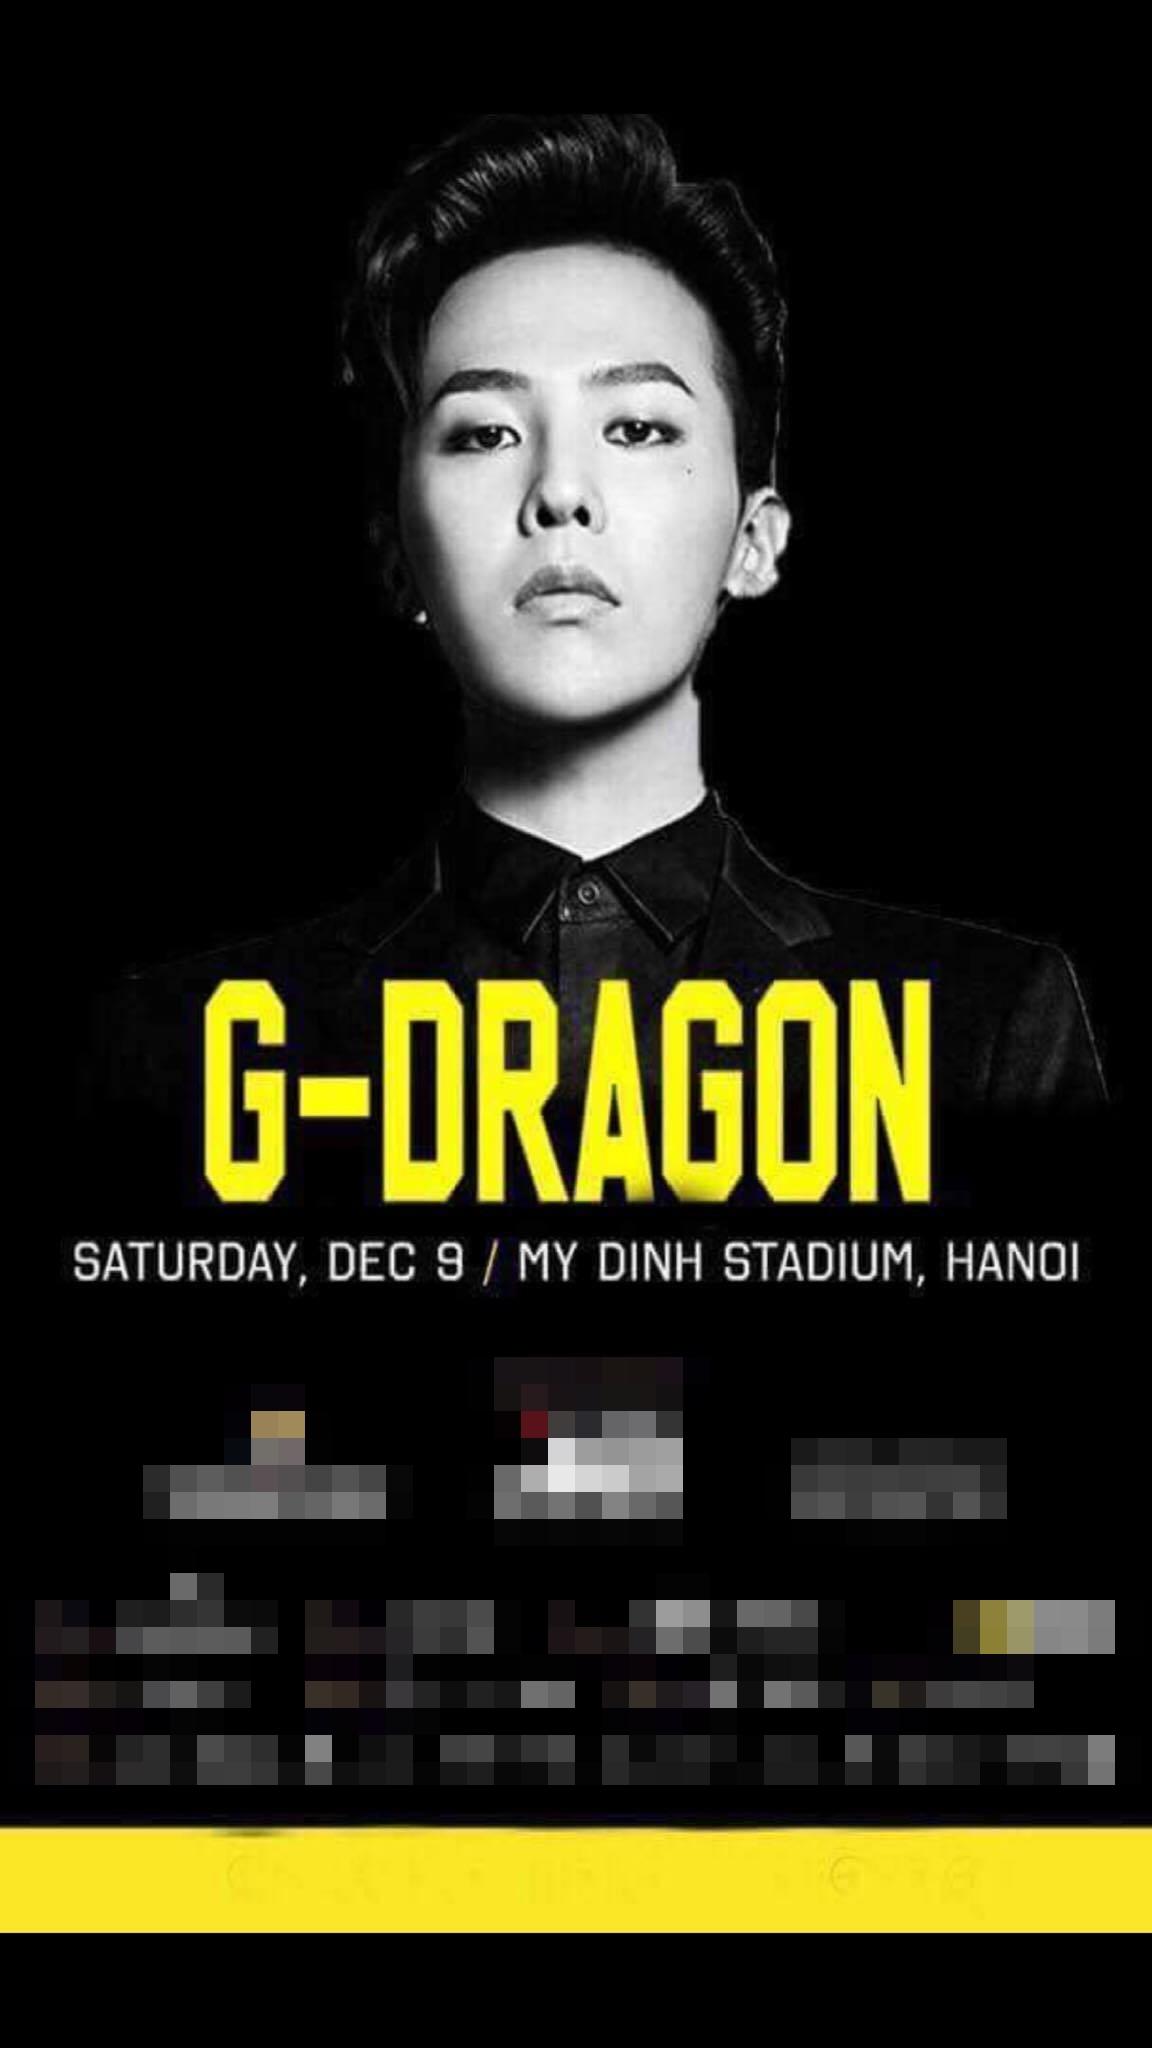 Xôn xao về poster thông báo G-Dragon (Big Bang) diễn tại Hà Nội vào tháng 12-1